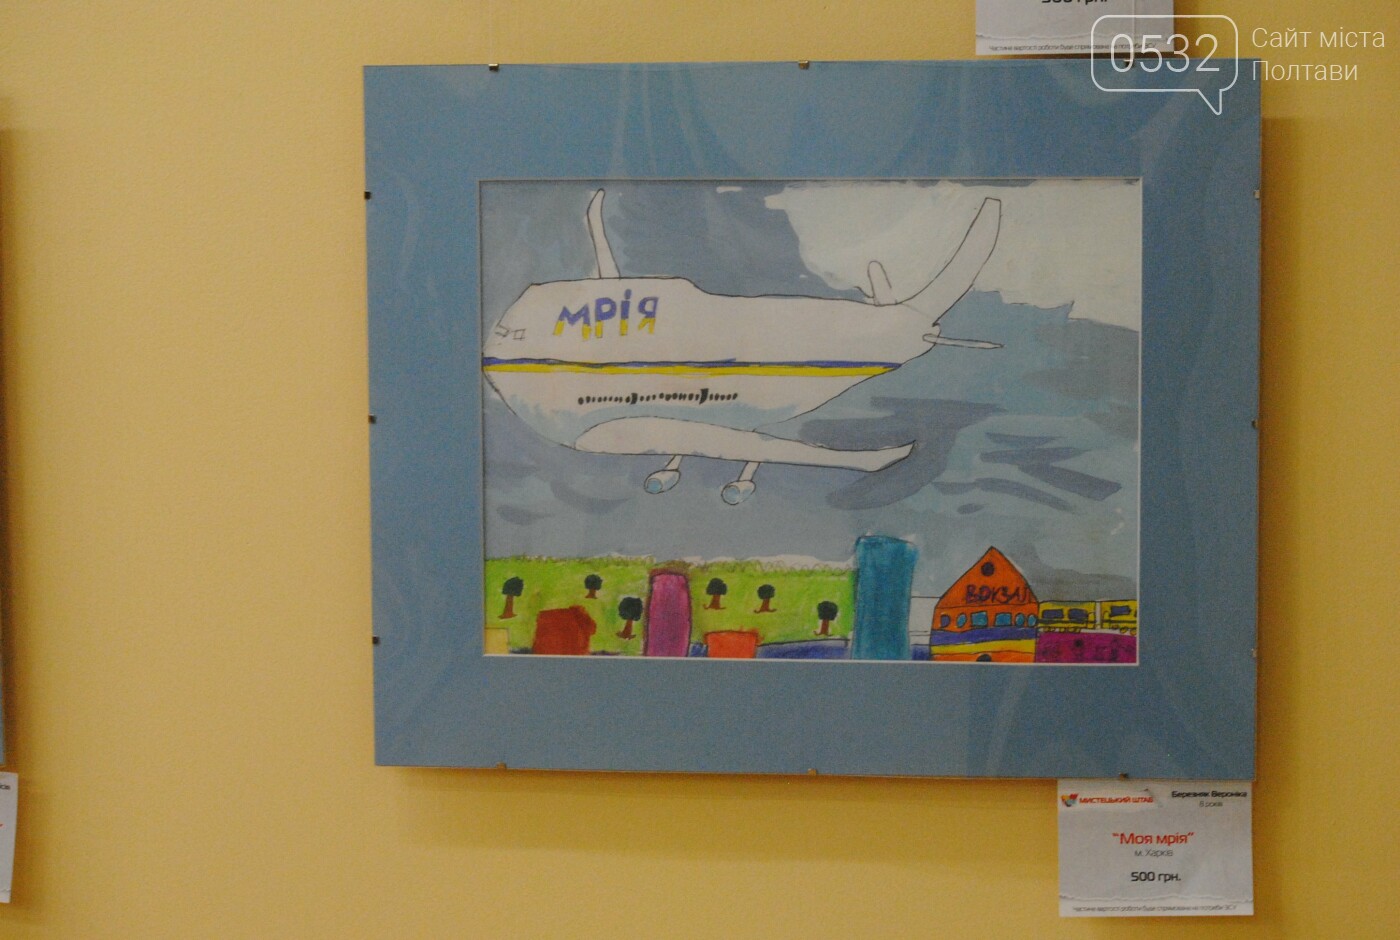 У полтавській «Галереї мистецтв» відкрилася виставка-продаж дитячих малюнків зі збором коштів на ЗСУ